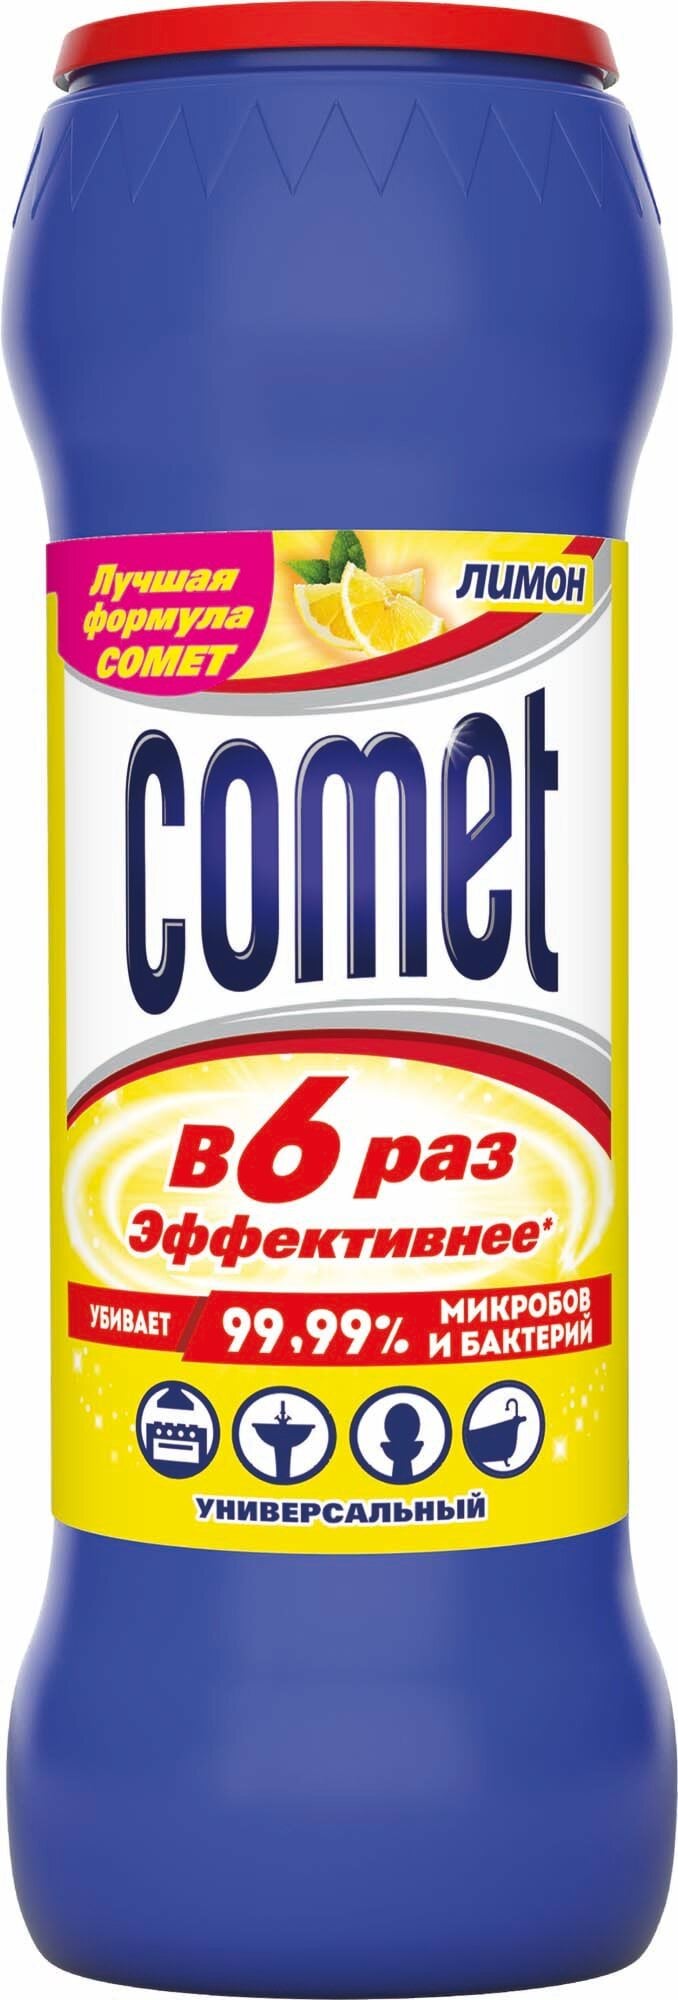 Порошок для чистки з дезинфікуючими властивостями Comet Лимон з хлорінолом